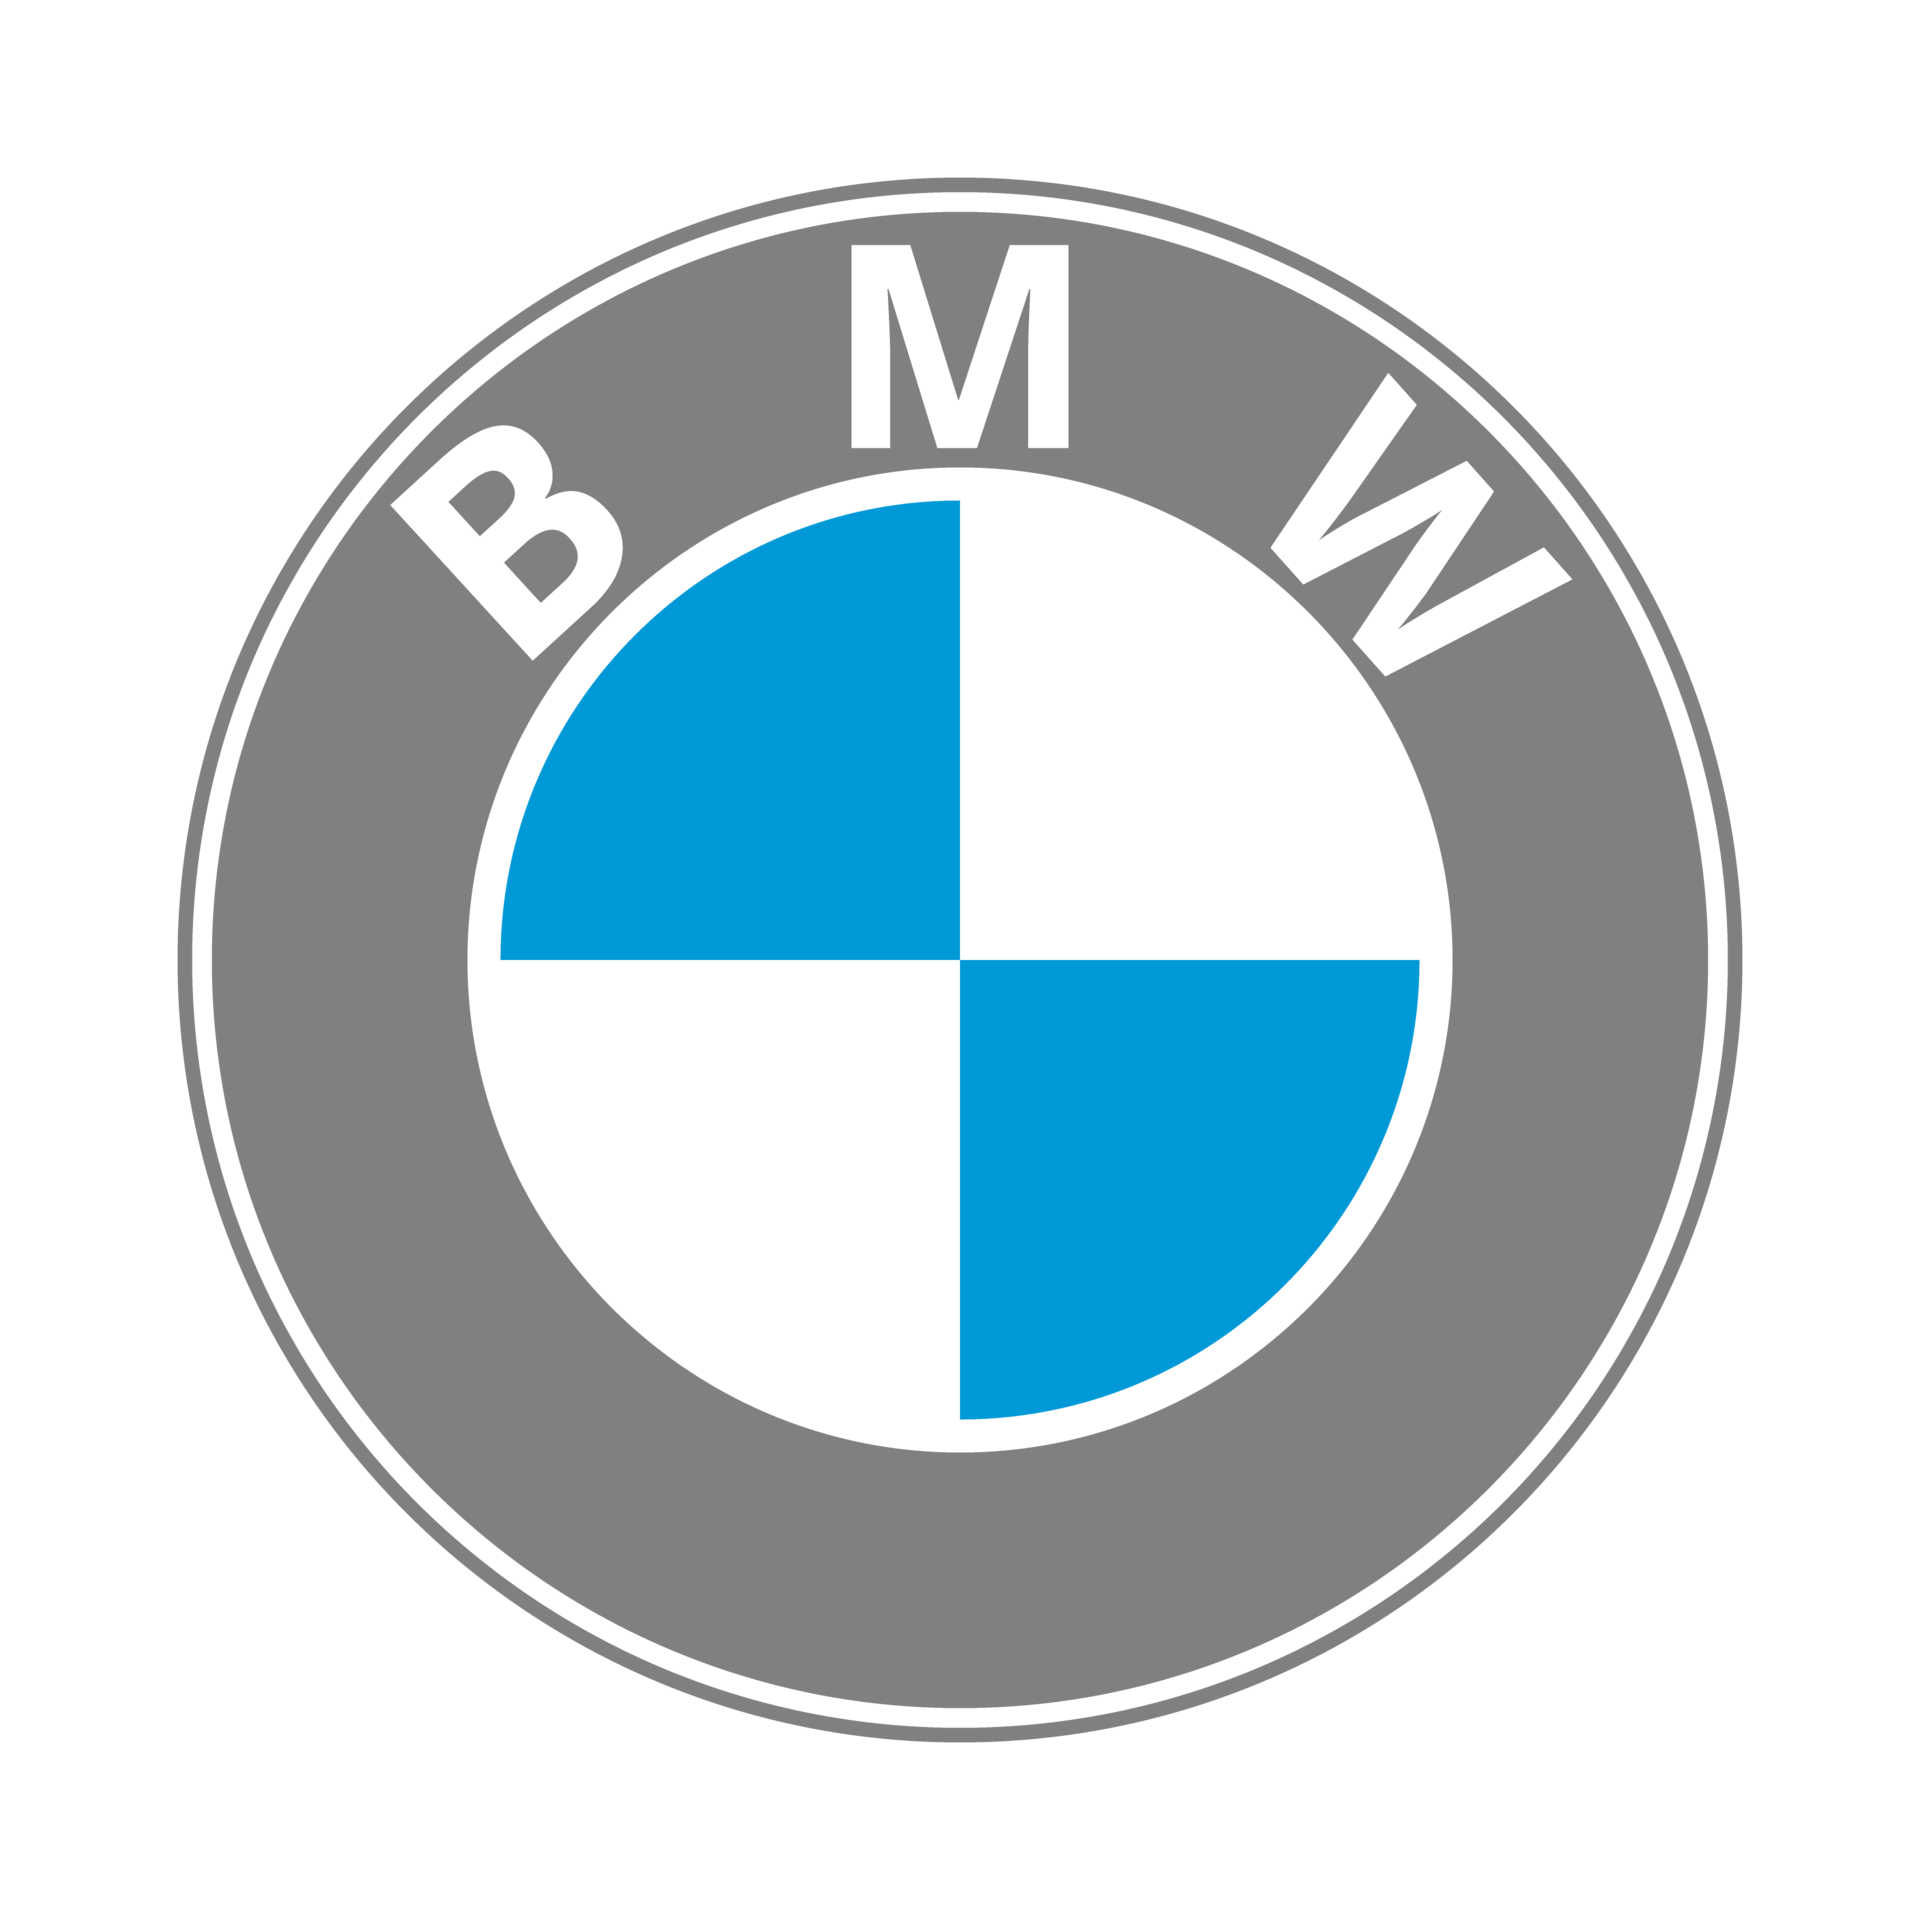 bmw-logo-free-download-free-png